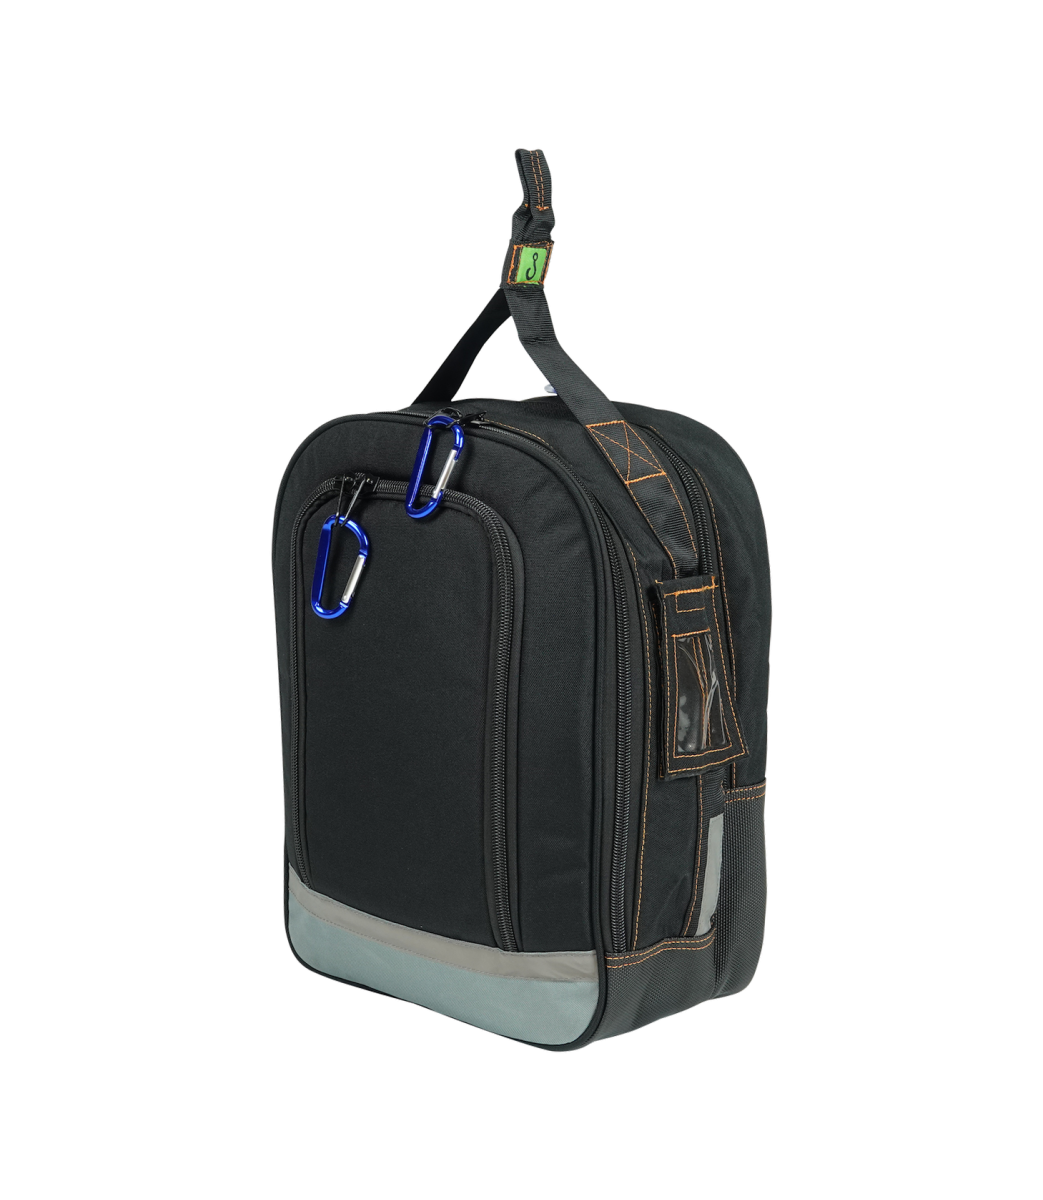 EMG Backpack w/ Lifting Option